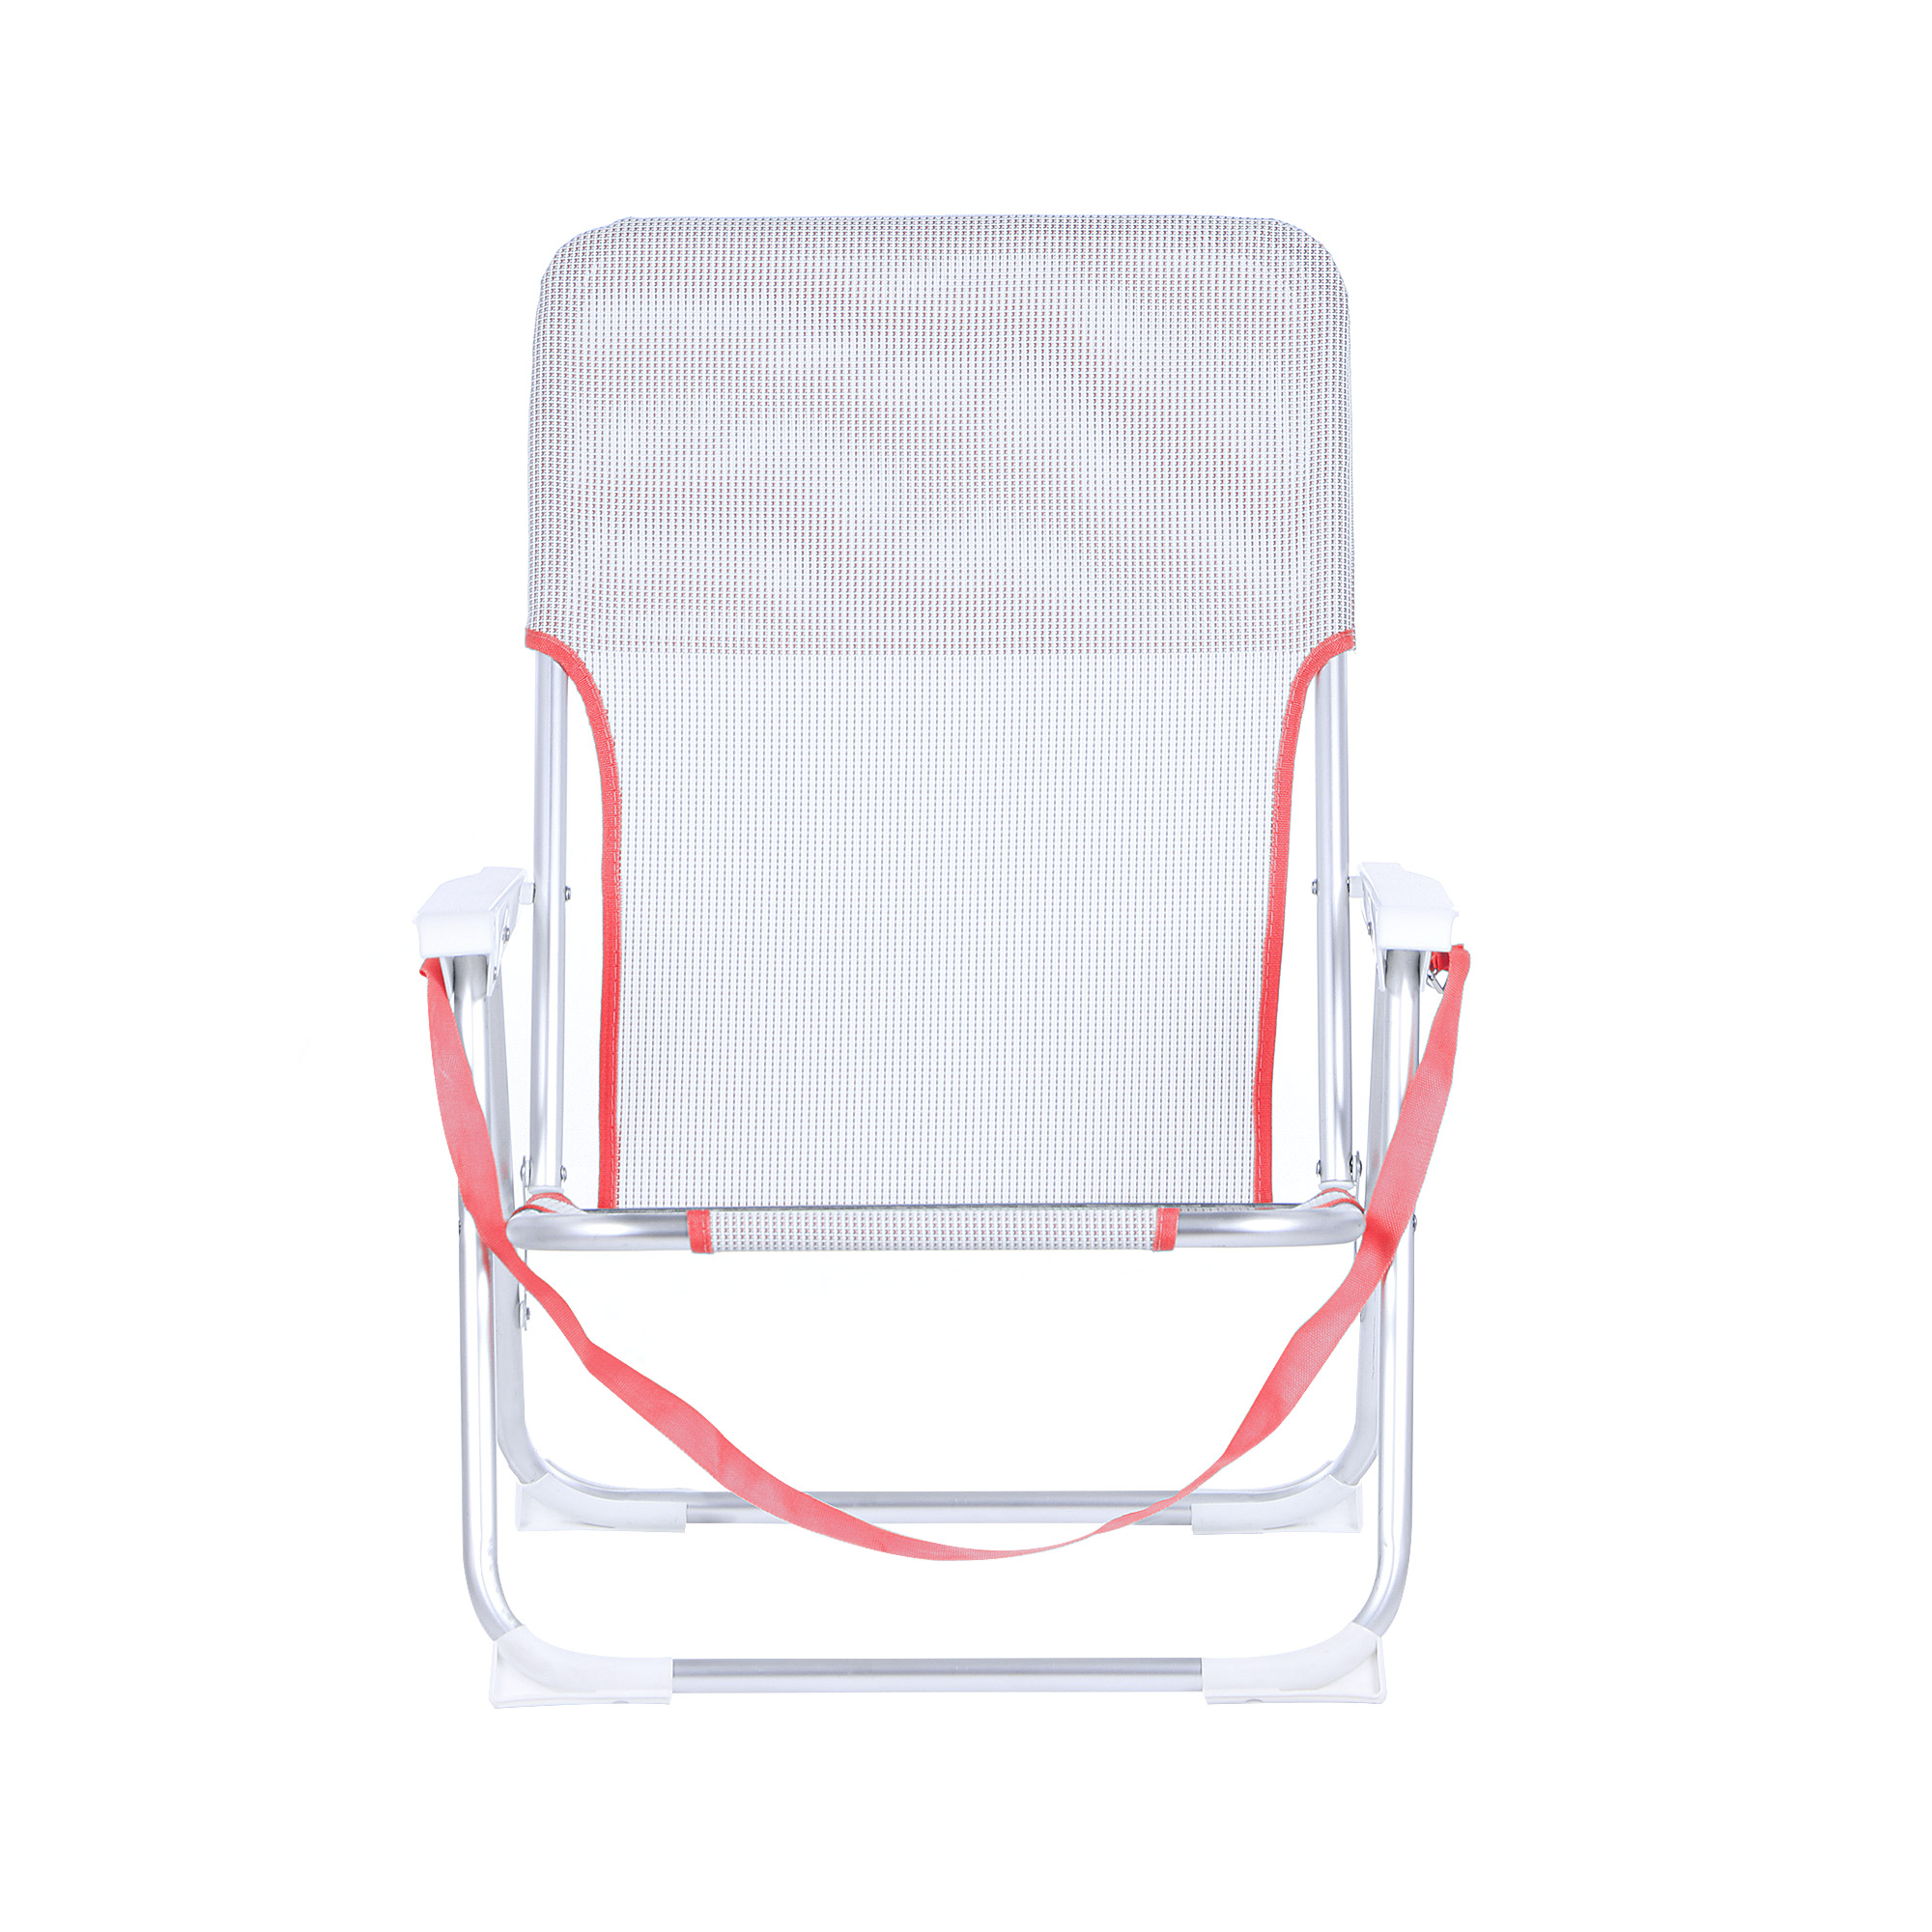 Кресло складное для кемпинга Koopman furniture 40x56x70cm, цвет в ассортименте, размер 40x56x70 см - фото 11